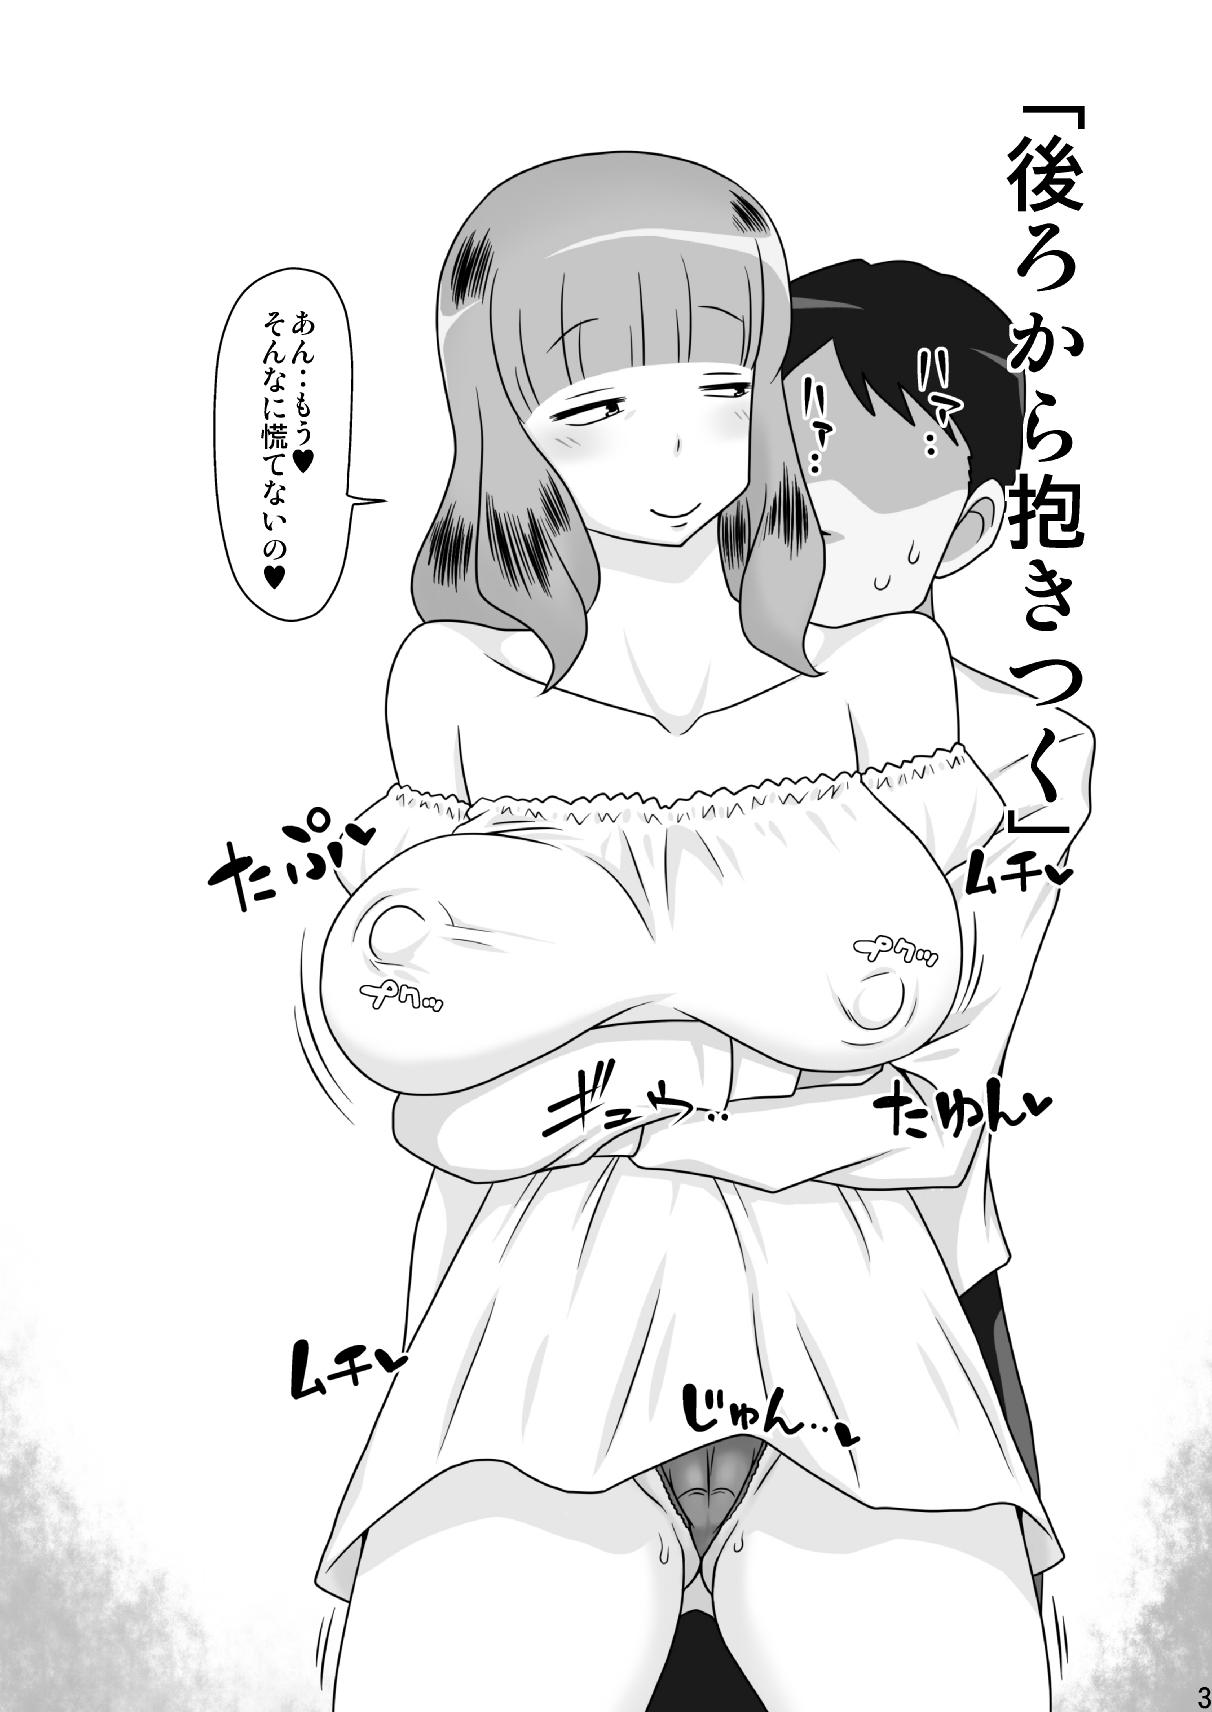 Infiel Tomodachi no Mama to suru, 11 no Koto. Tan - Page 3